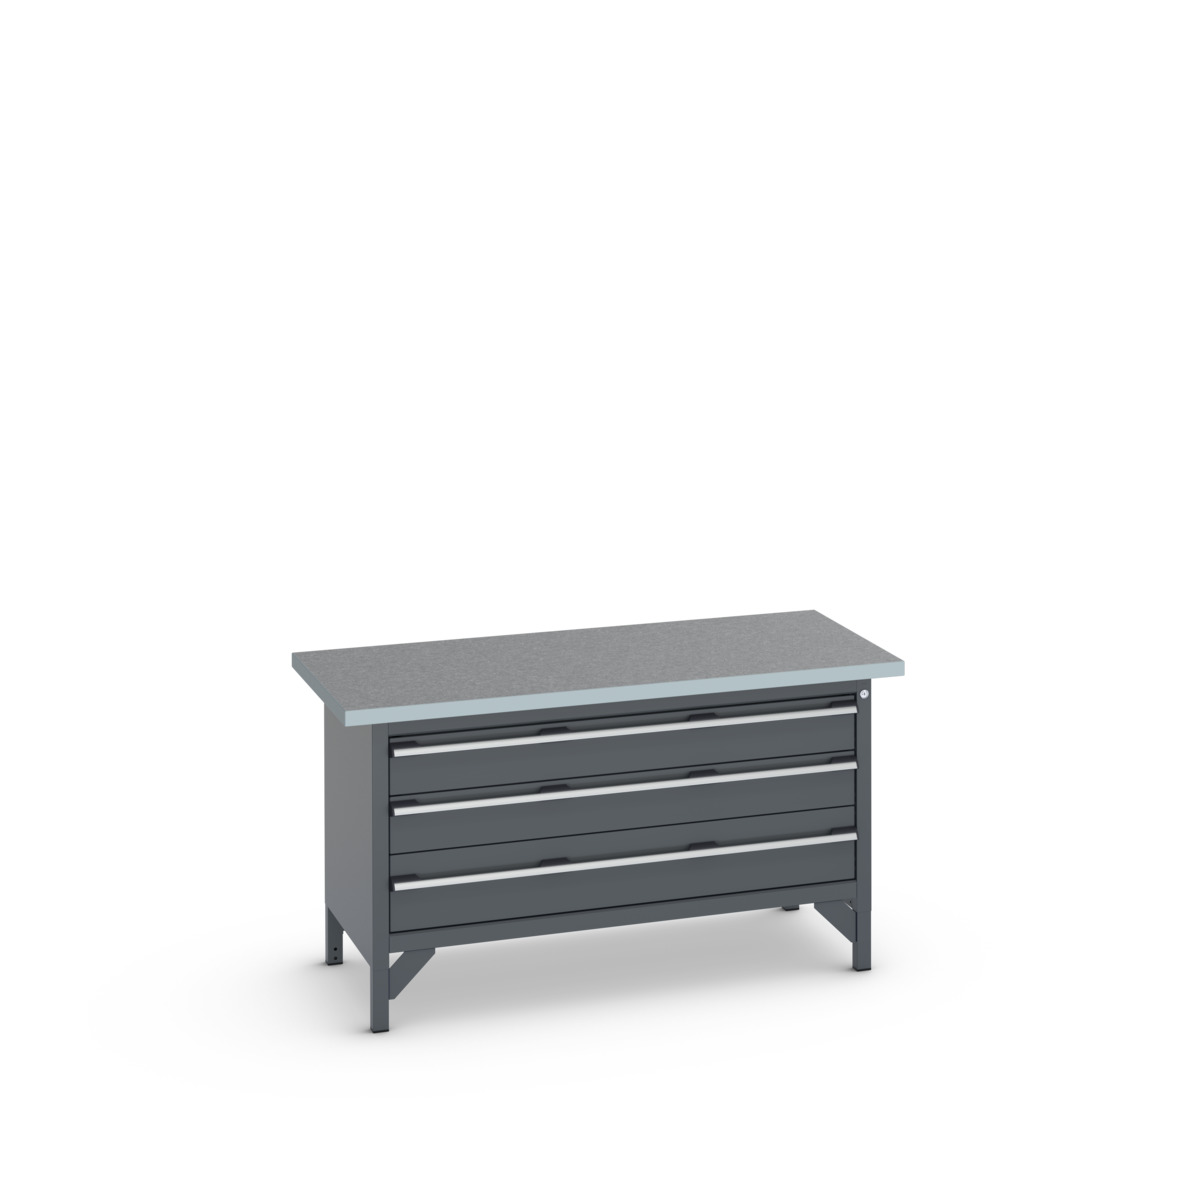 41002170.77V - cubio storage bench (lino)